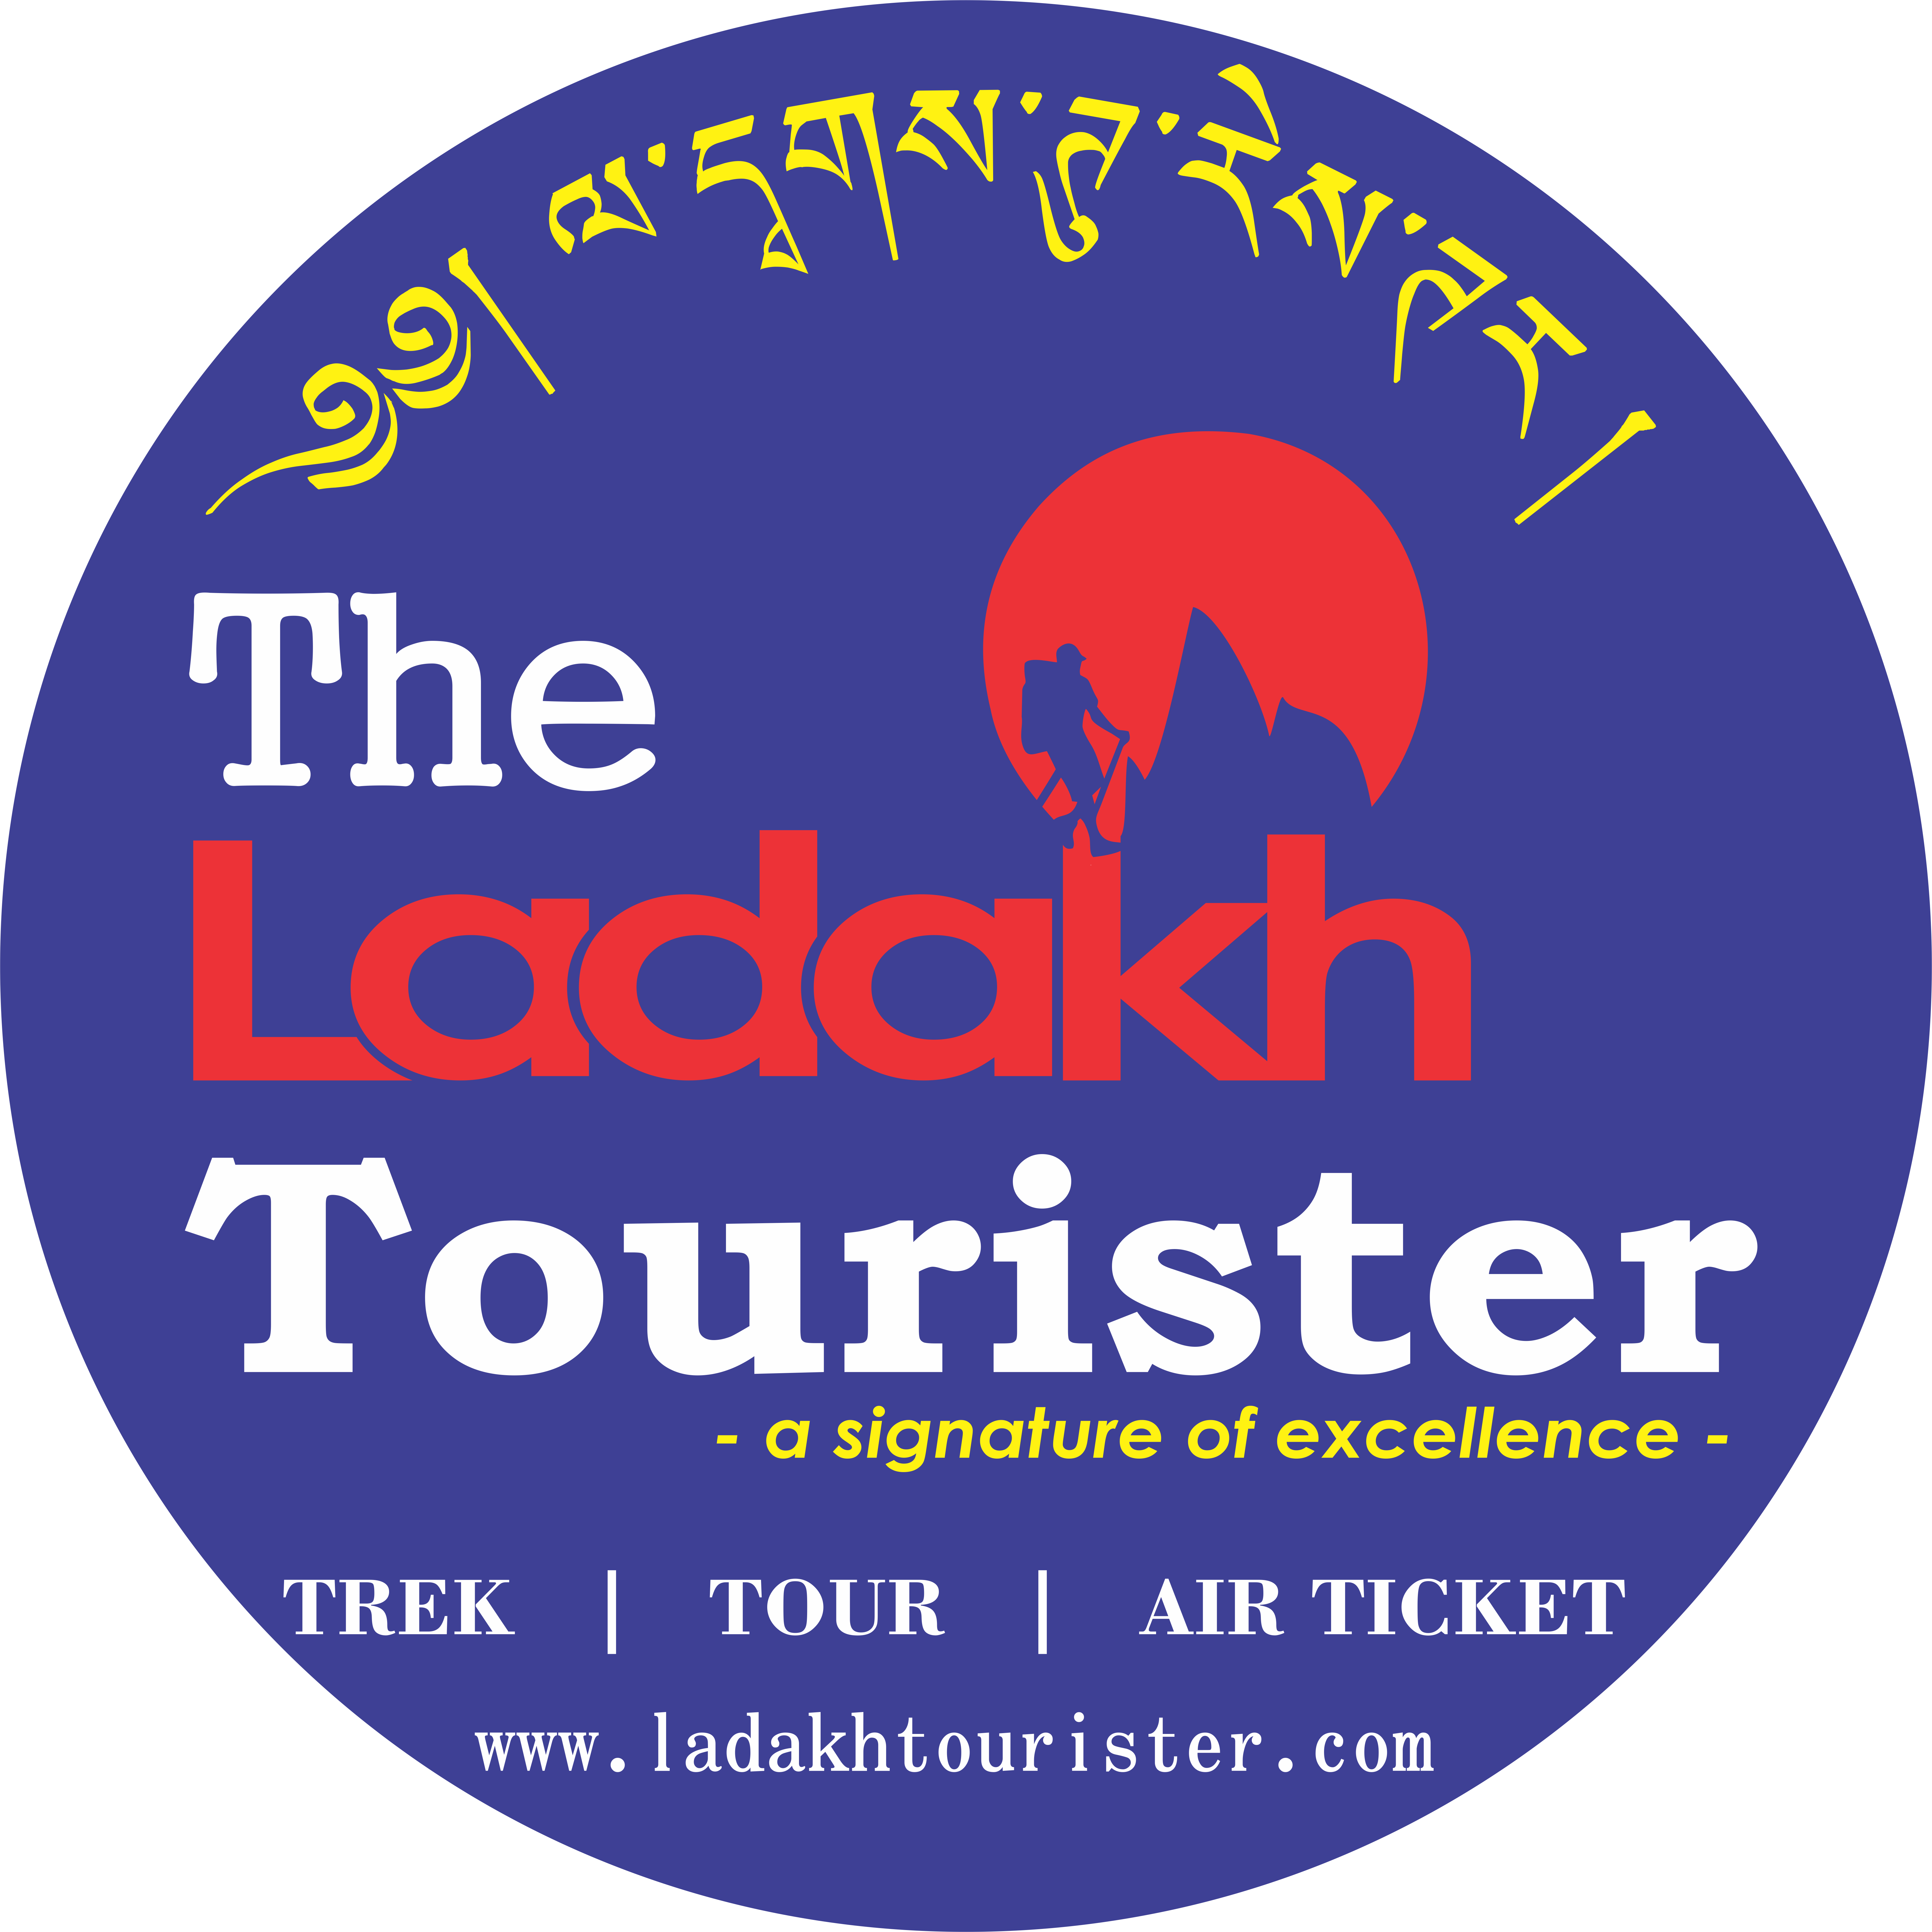 Ladakh Tourister